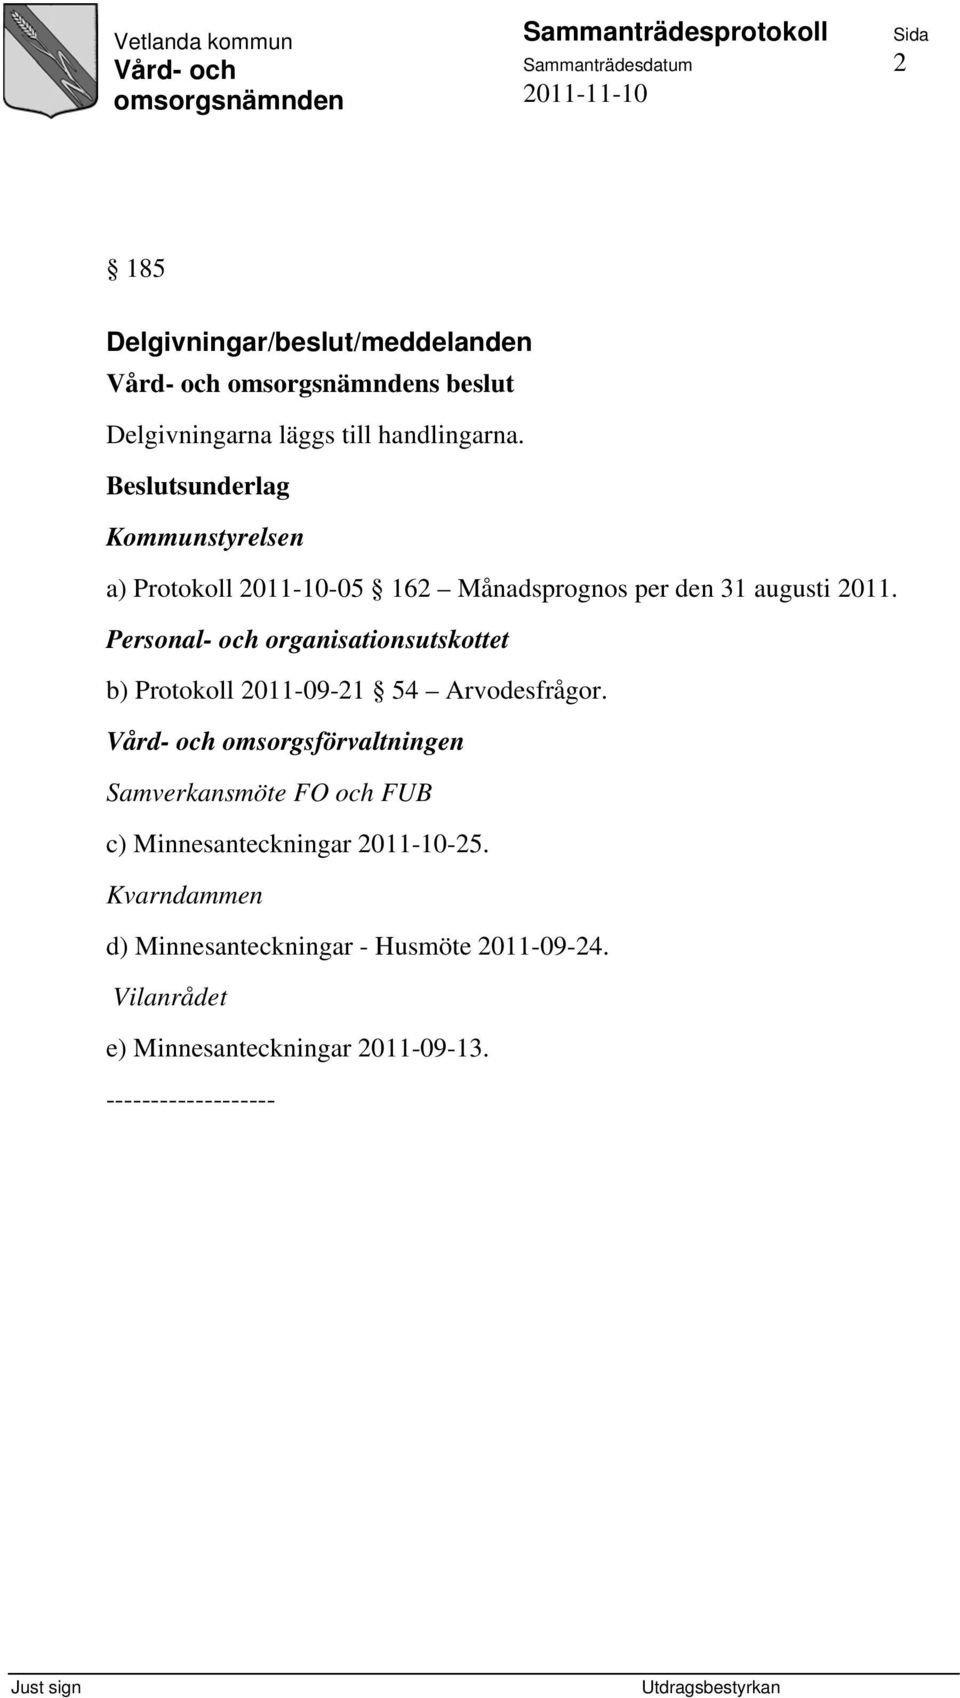 Personal- och organisationsutskottet b) Protokoll 2011-09-21 54 Arvodesfrågor.